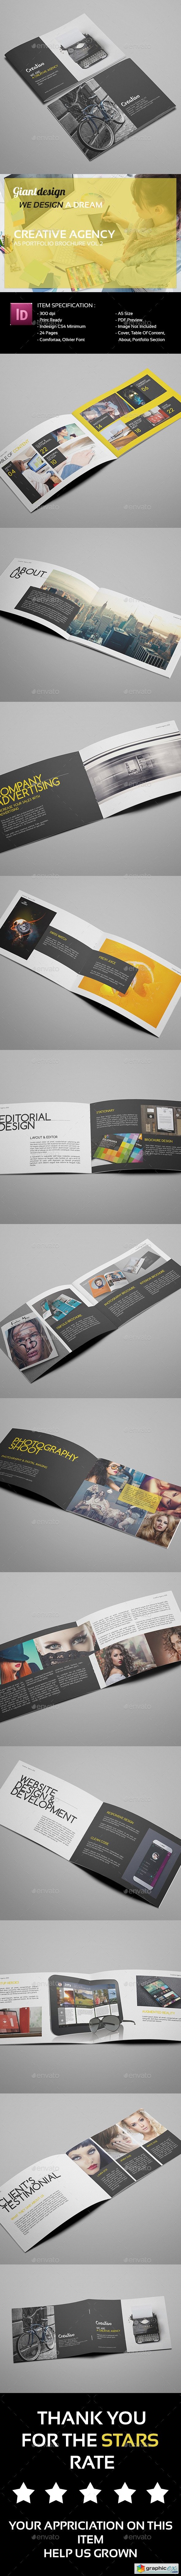 Creative Agency - A5 Portfolio Brochure Vol2